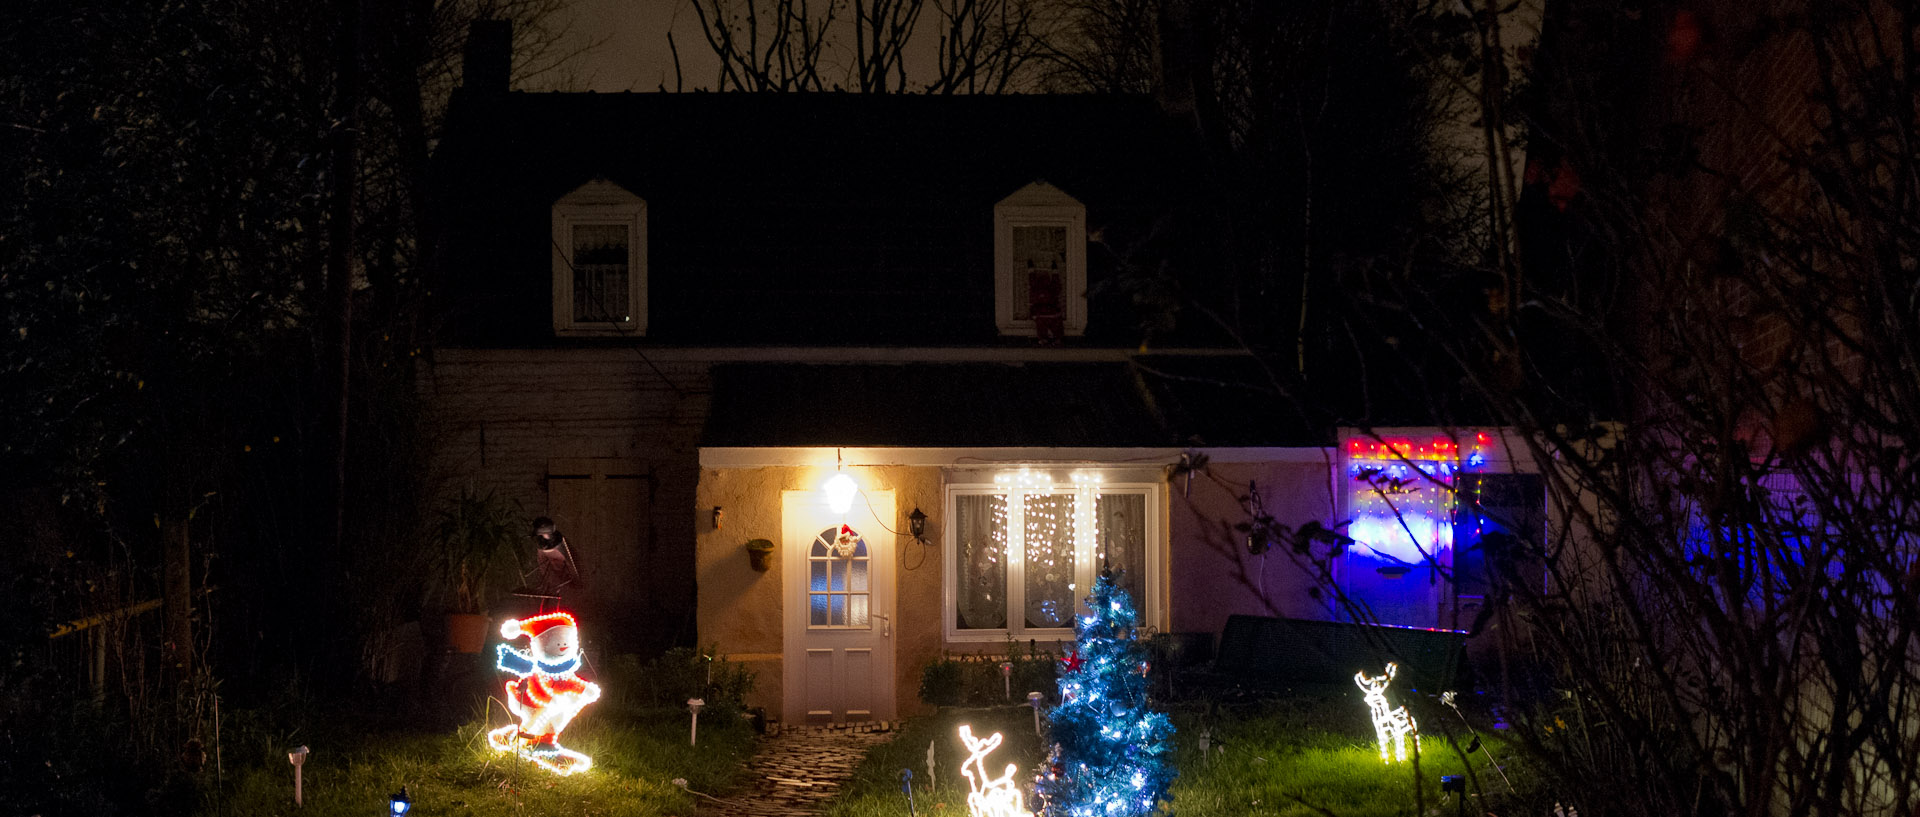 Maison illuminée pour les fêtes de fin d'année, à Wasquehal.